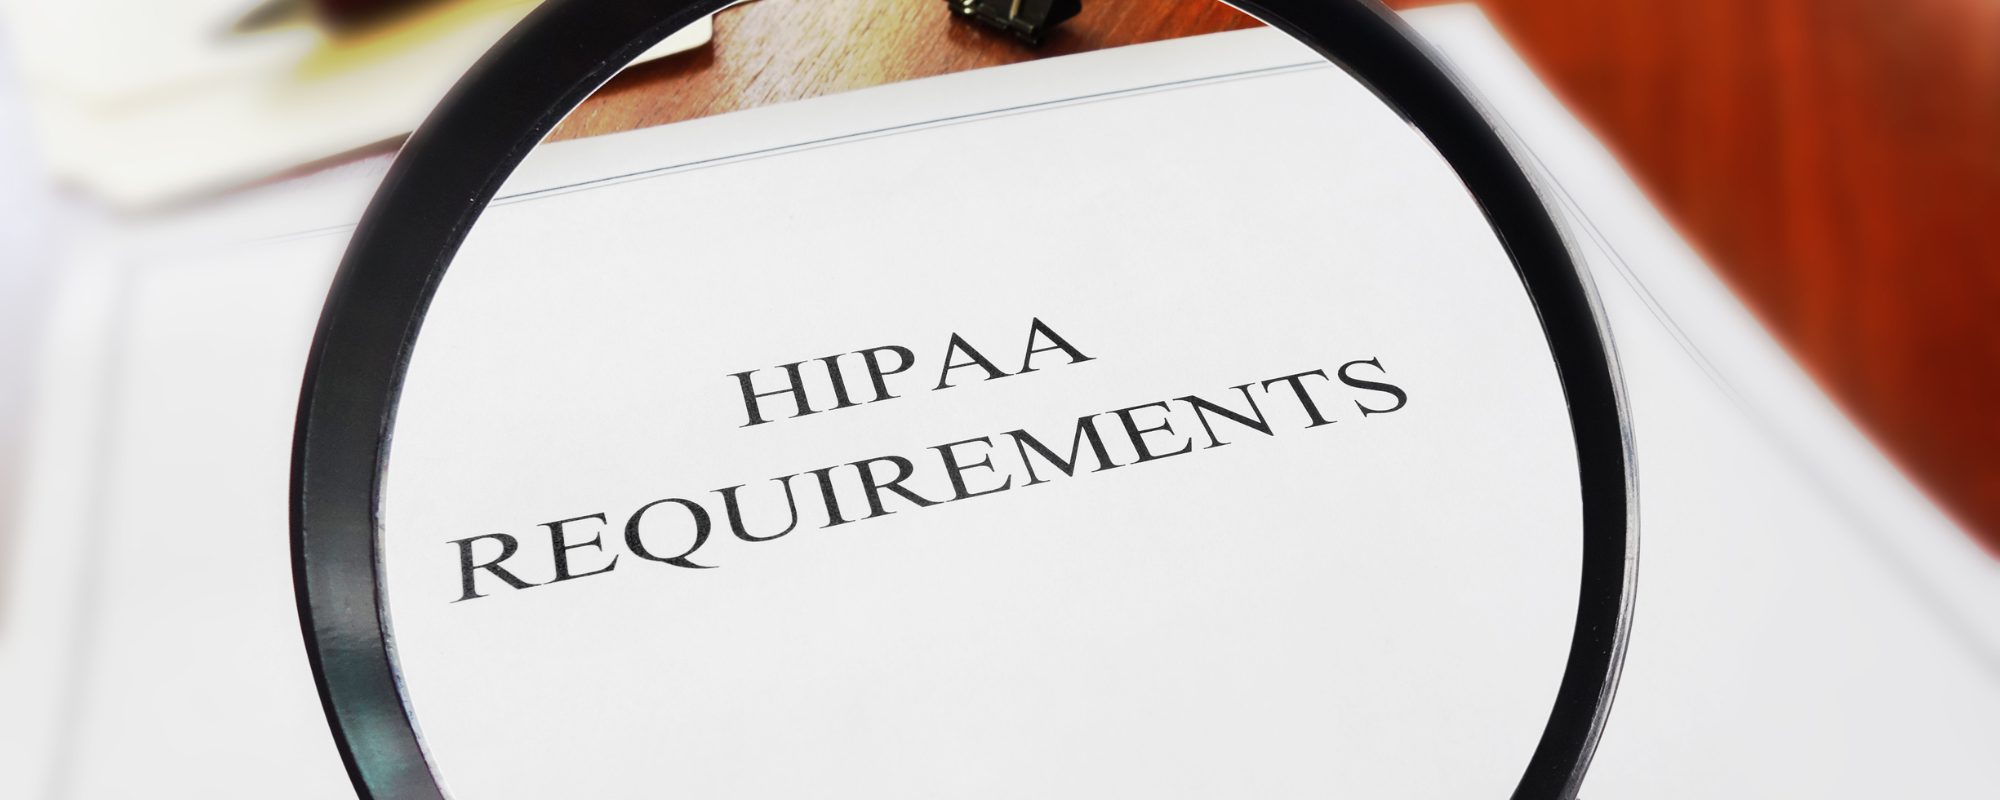 Purpose of HIPAA